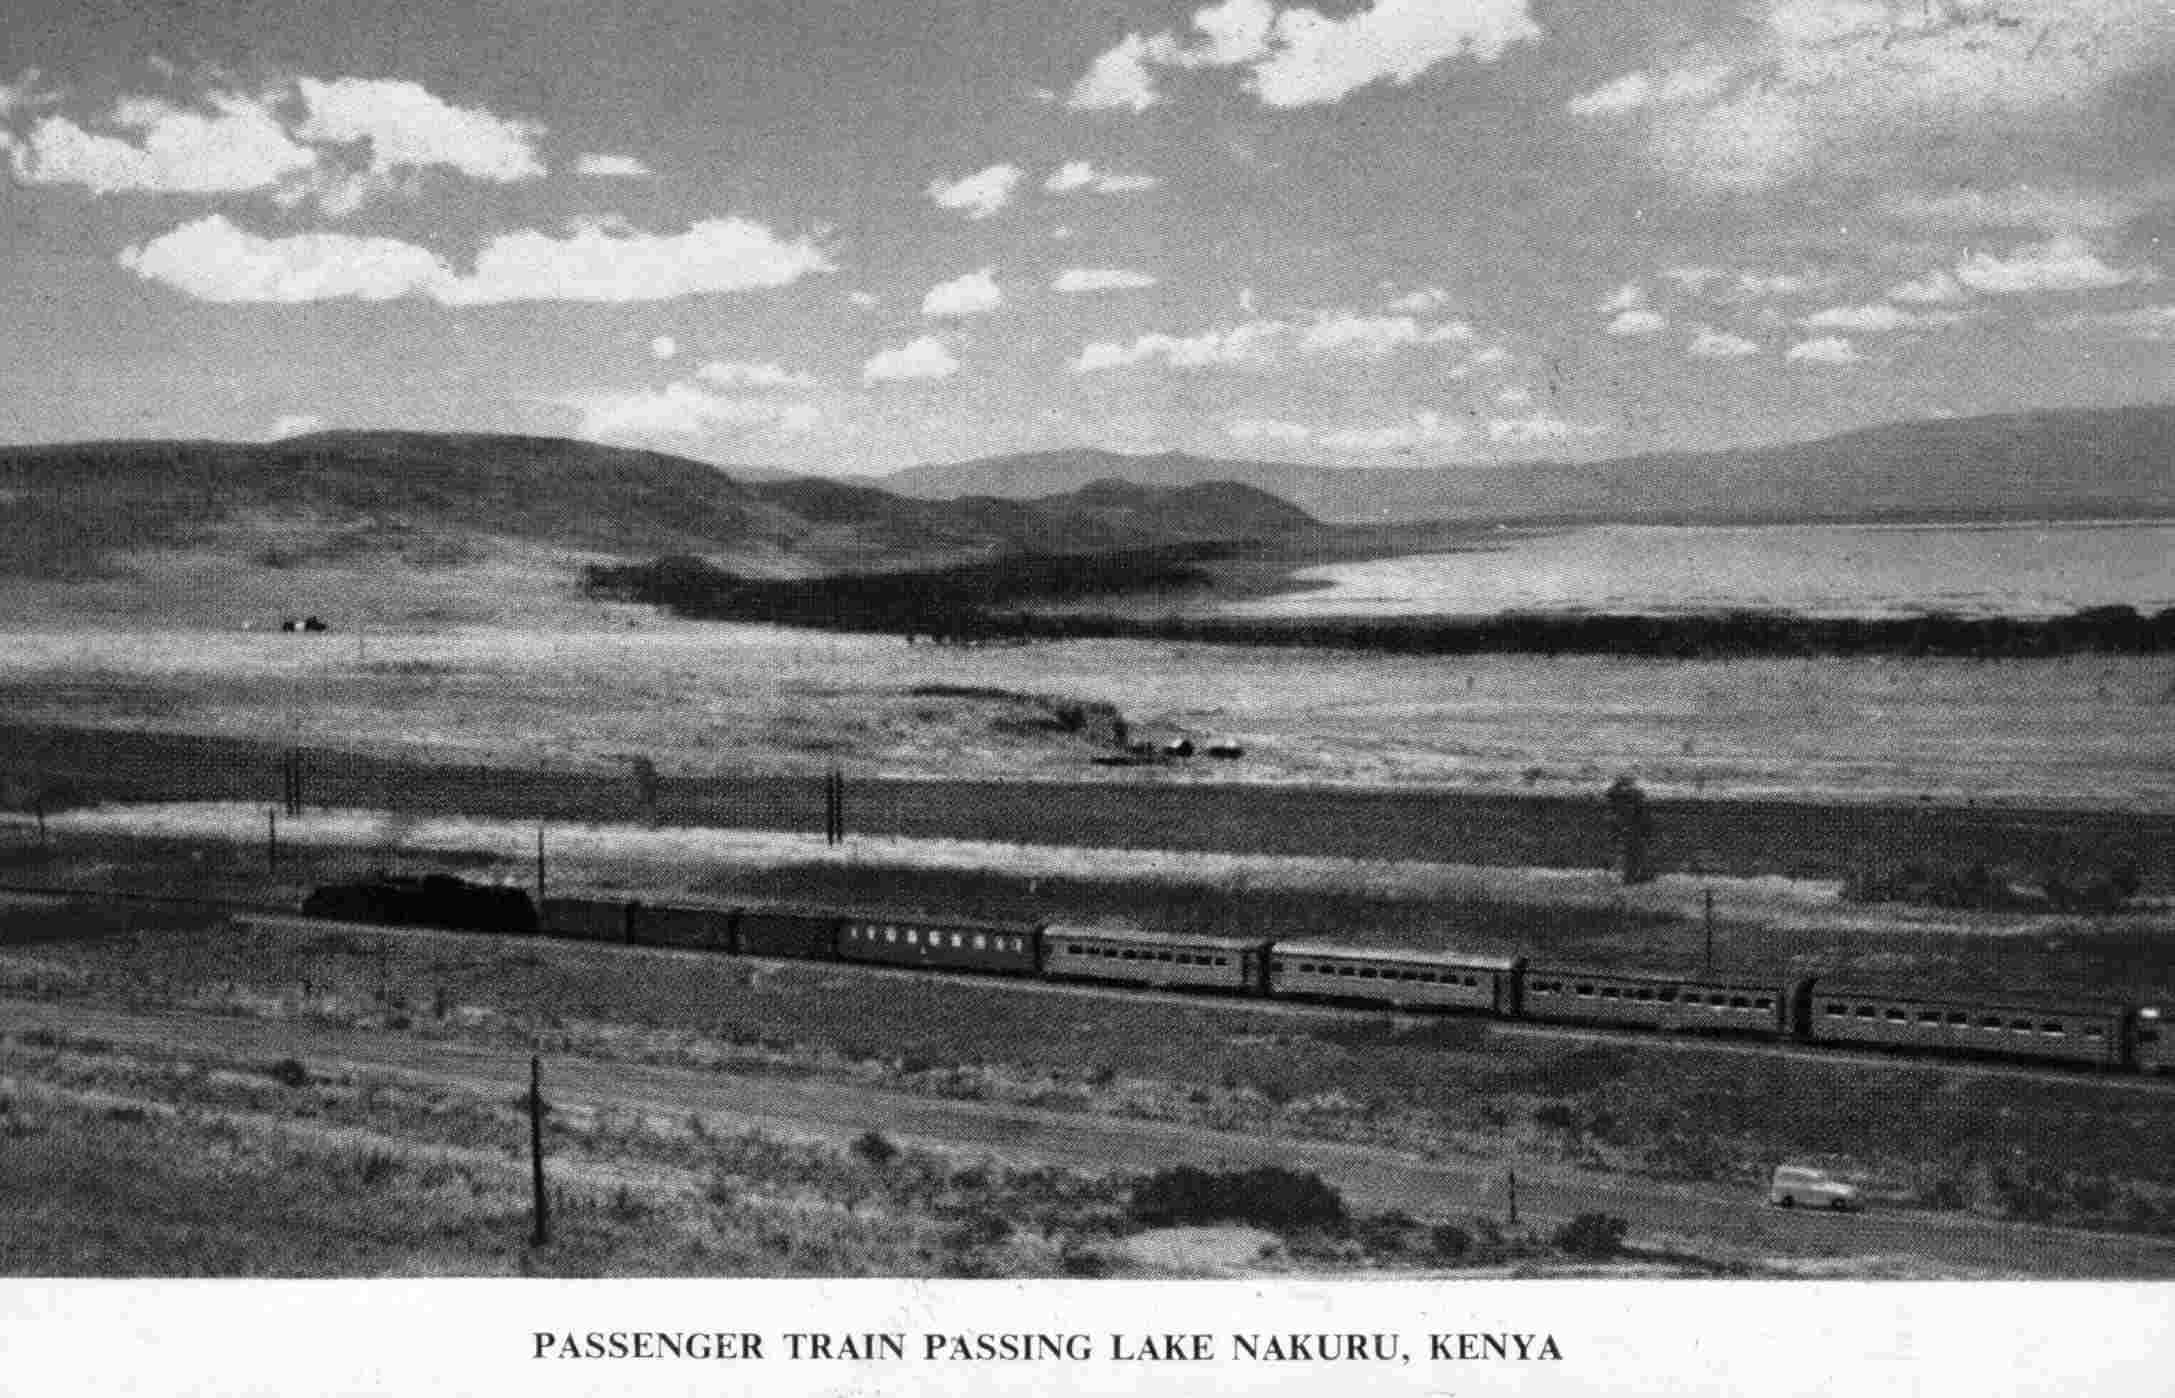 Train neaer Lake Nakuru, Kenya